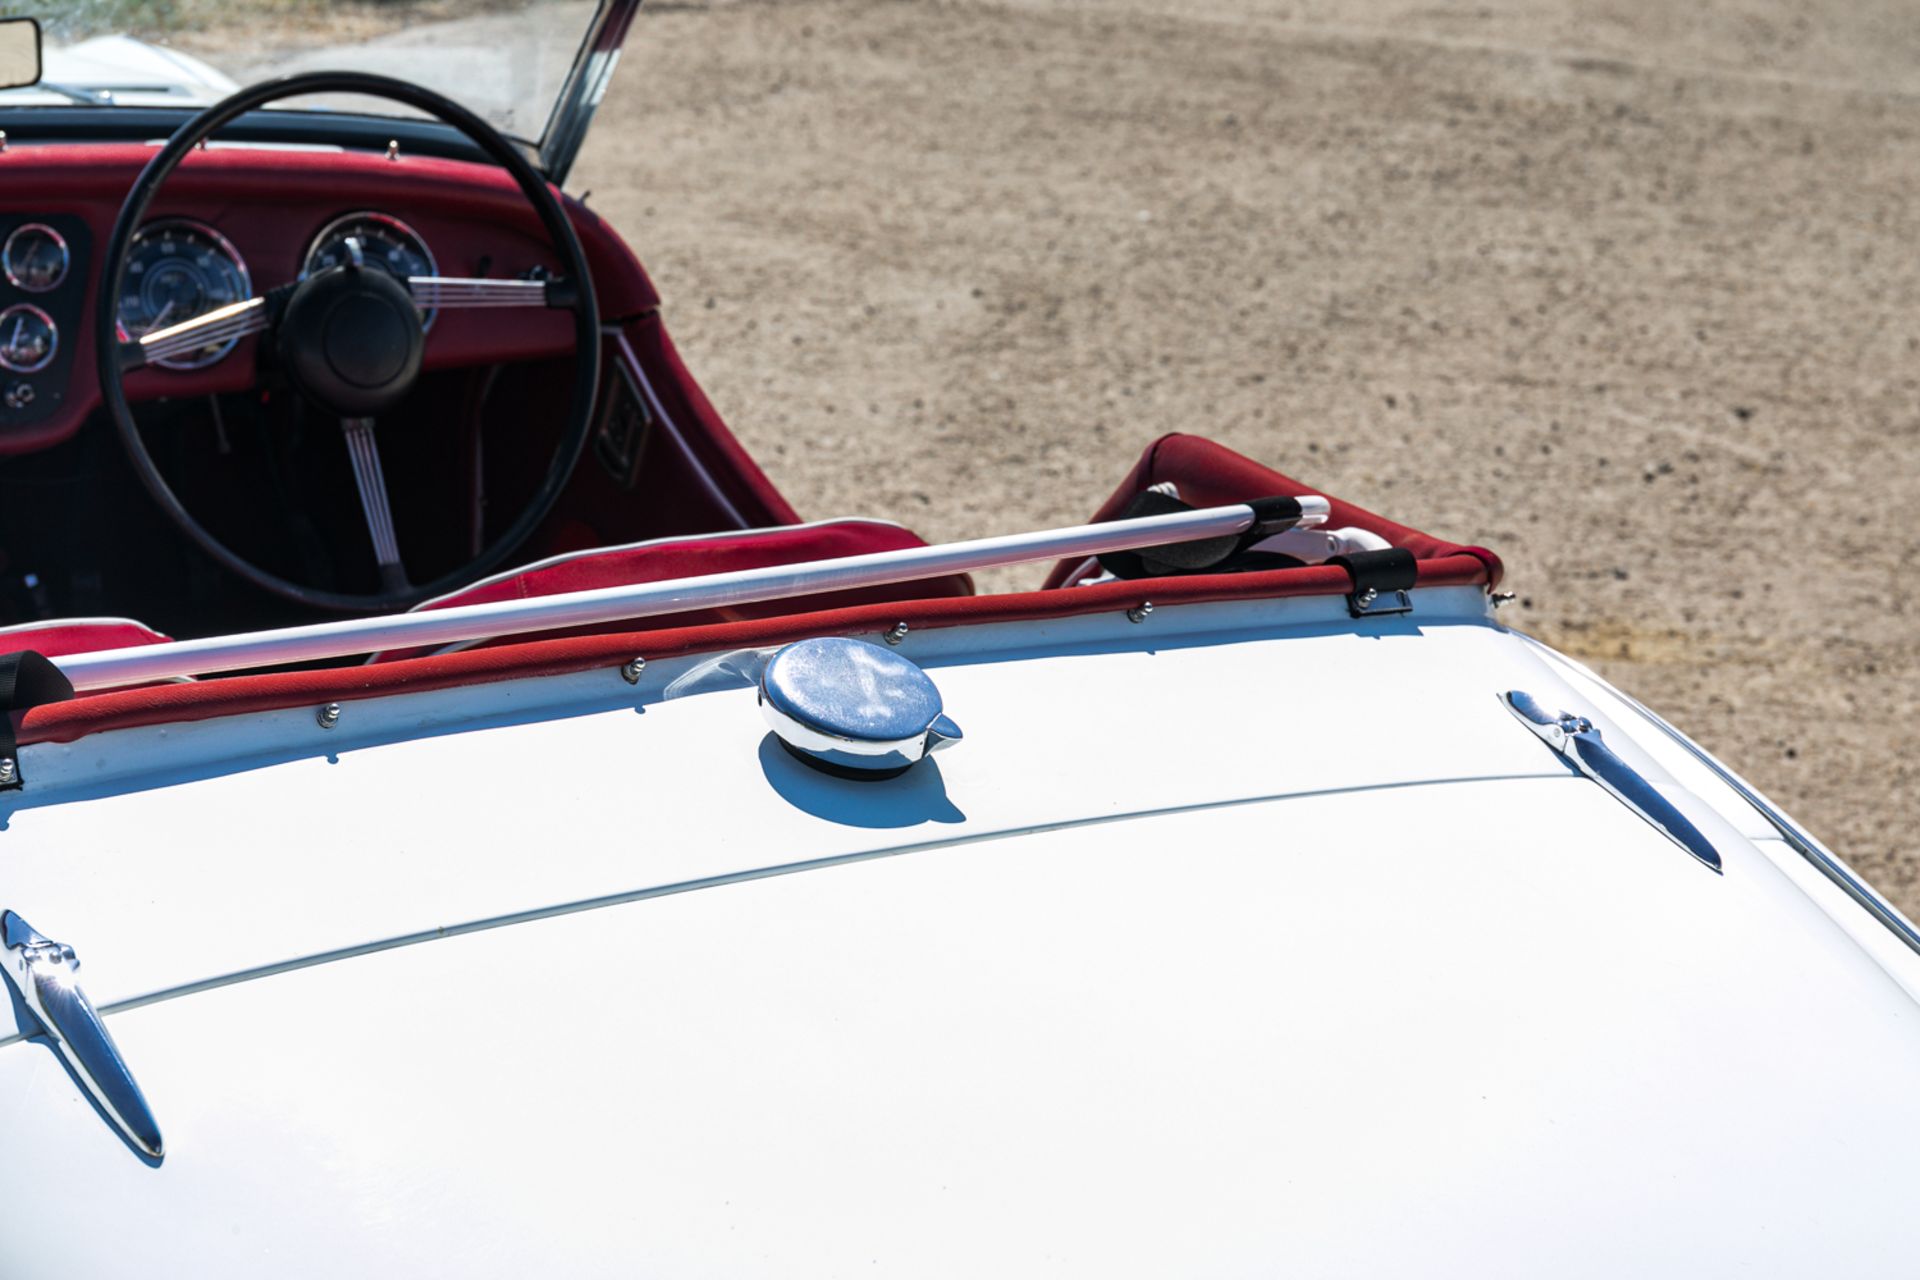 1959 Triumph TR3A - Image 3 of 17